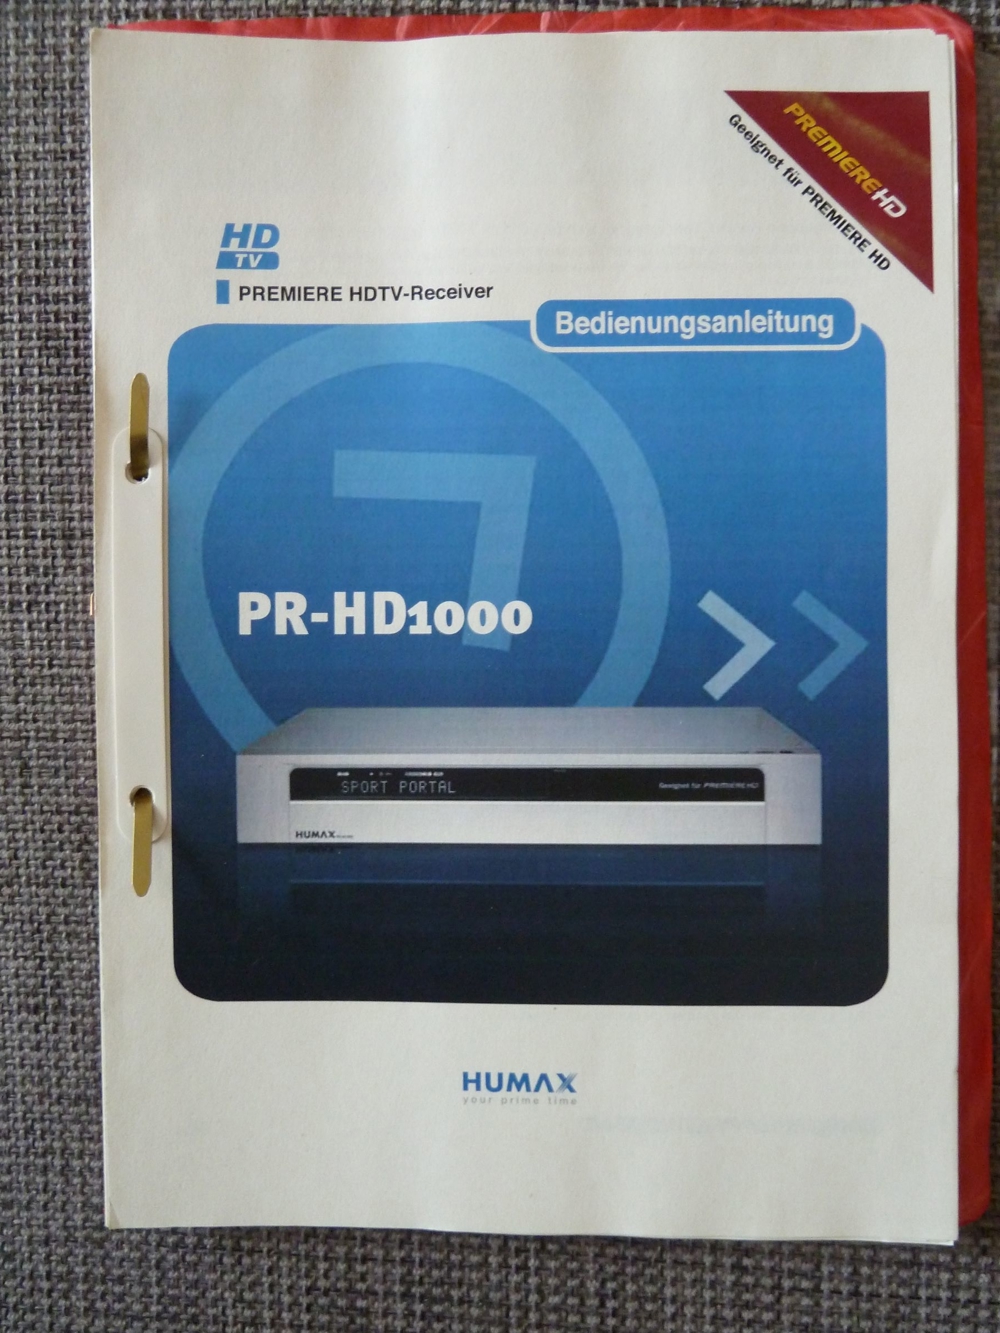 Bedienungsanleitung für Digital-Sat-Receiver HUMAX PR-1000